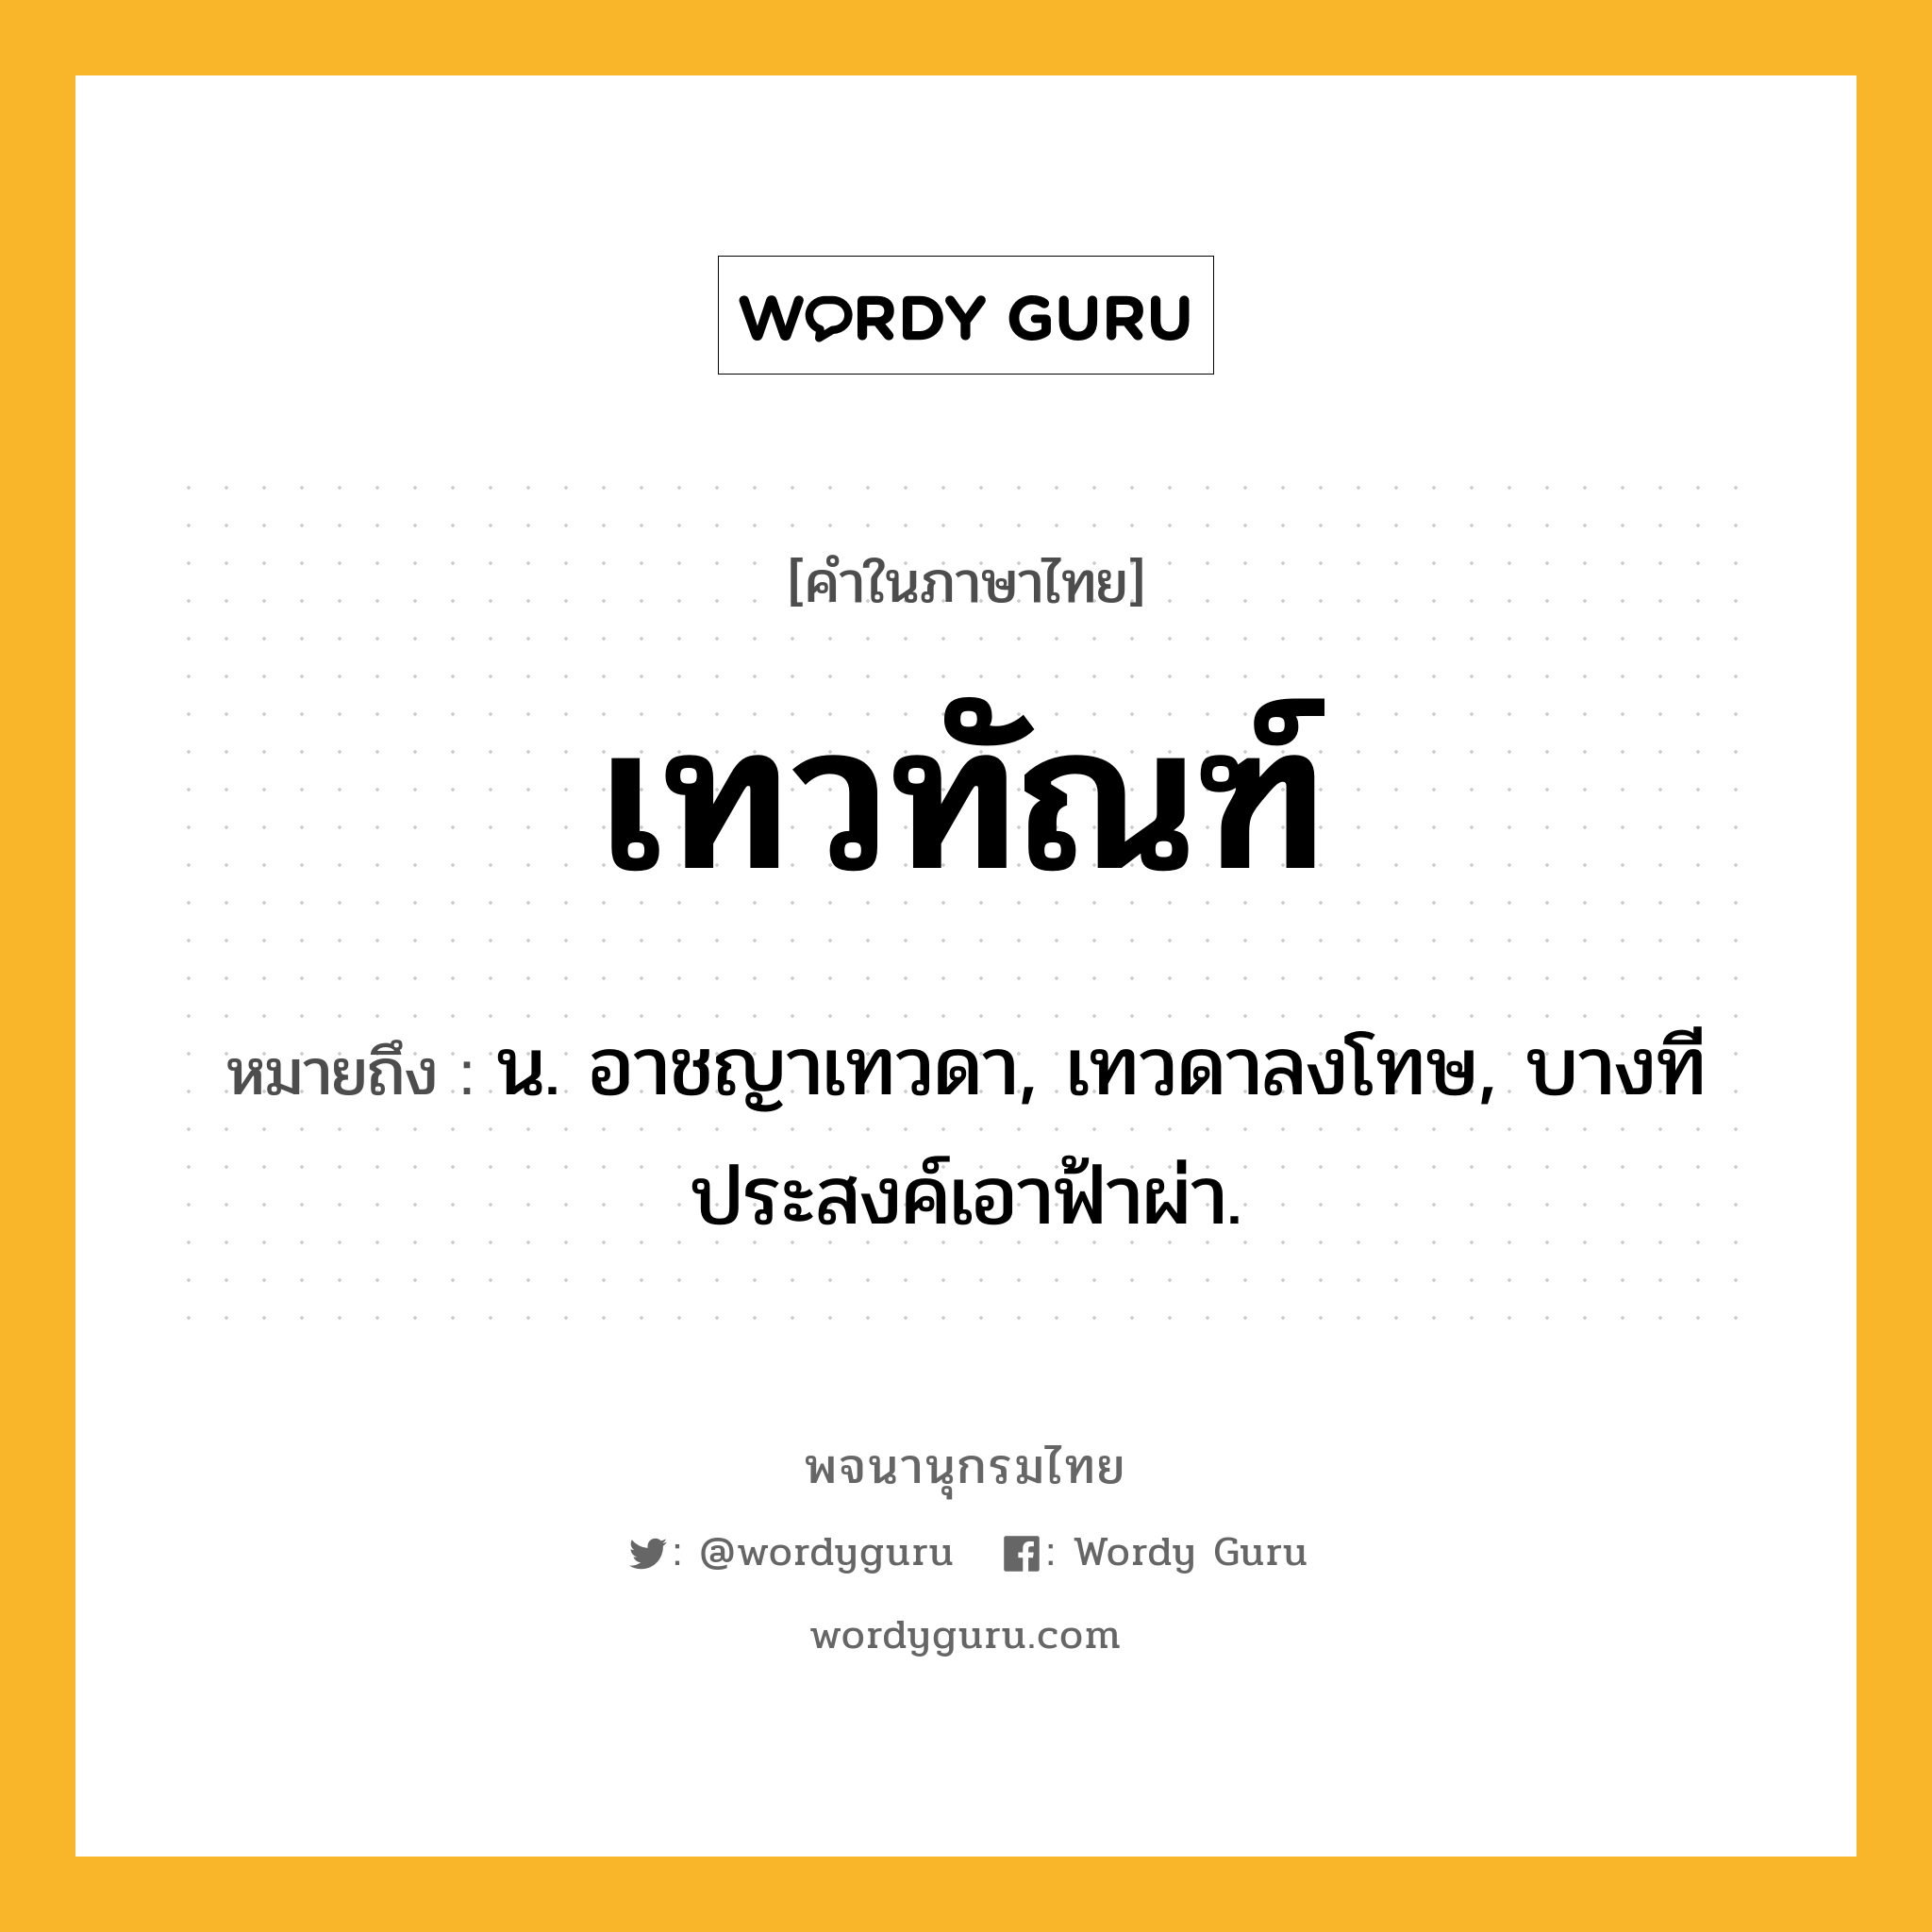 เทวทัณฑ์ ความหมาย หมายถึงอะไร?, คำในภาษาไทย เทวทัณฑ์ หมายถึง น. อาชญาเทวดา, เทวดาลงโทษ, บางทีประสงค์เอาฟ้าผ่า.